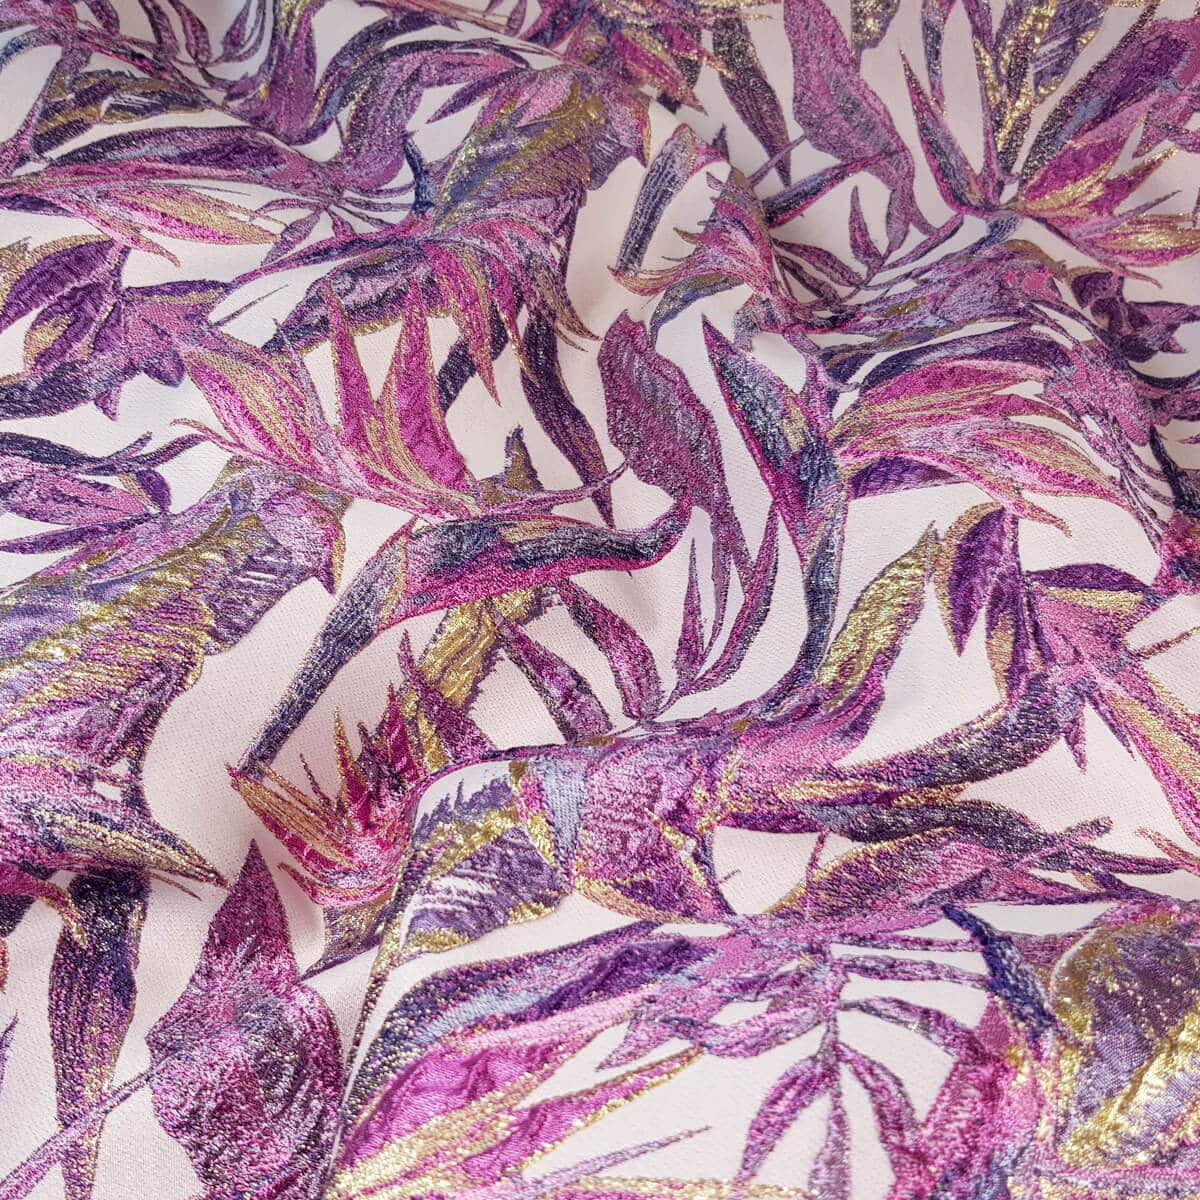 zakard w kwiaty strelicje roz fuksja z fioletemC